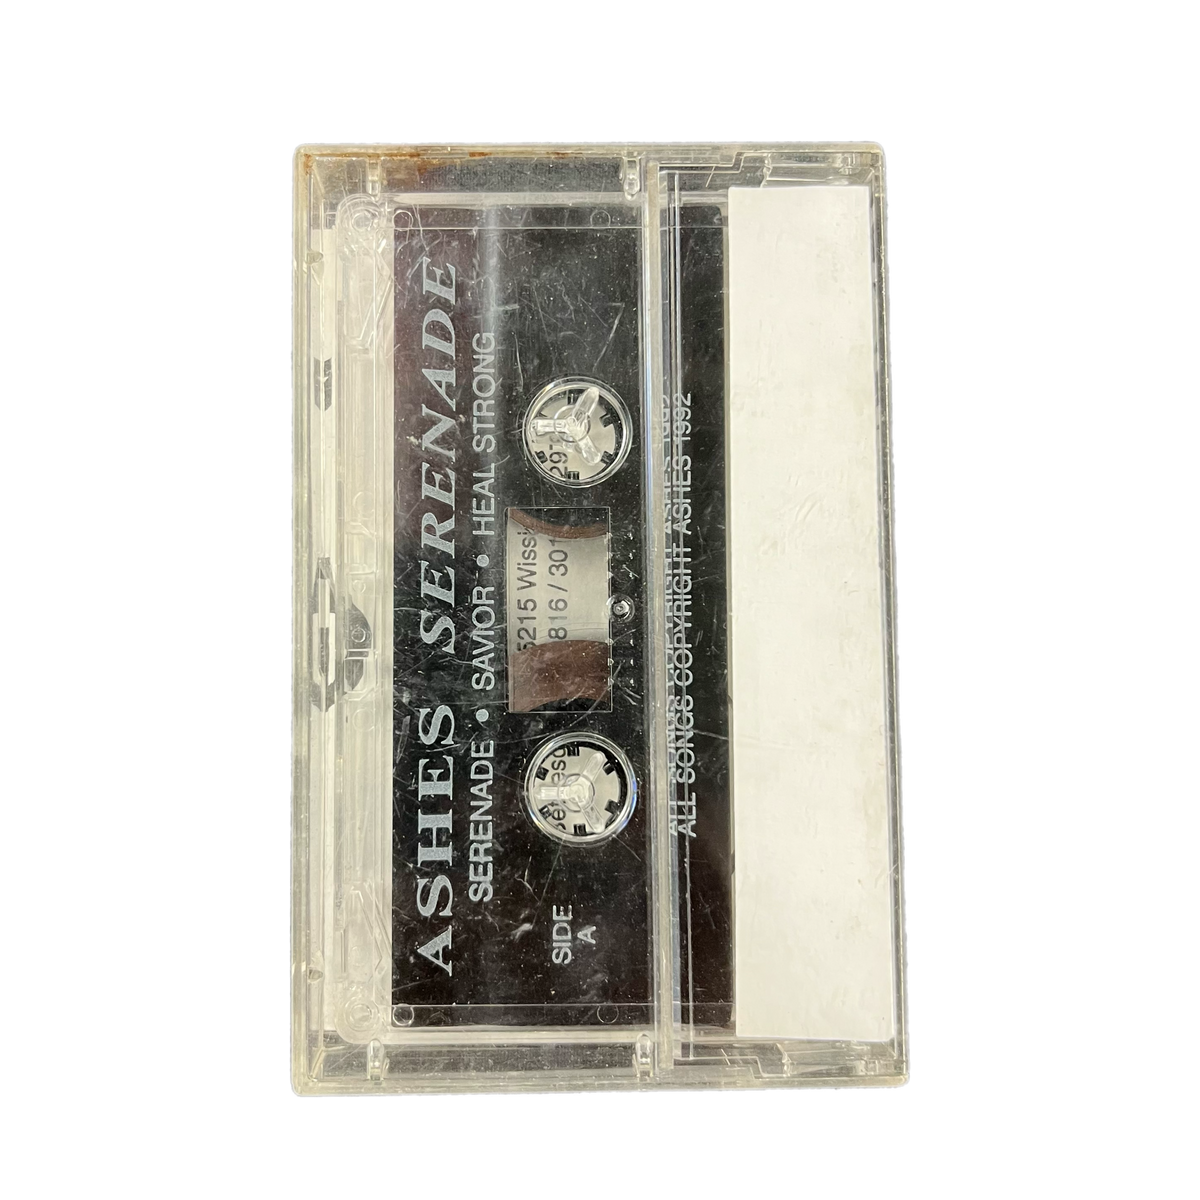 Vintage Ashes &quot;Serenade&quot; Cassette Tape